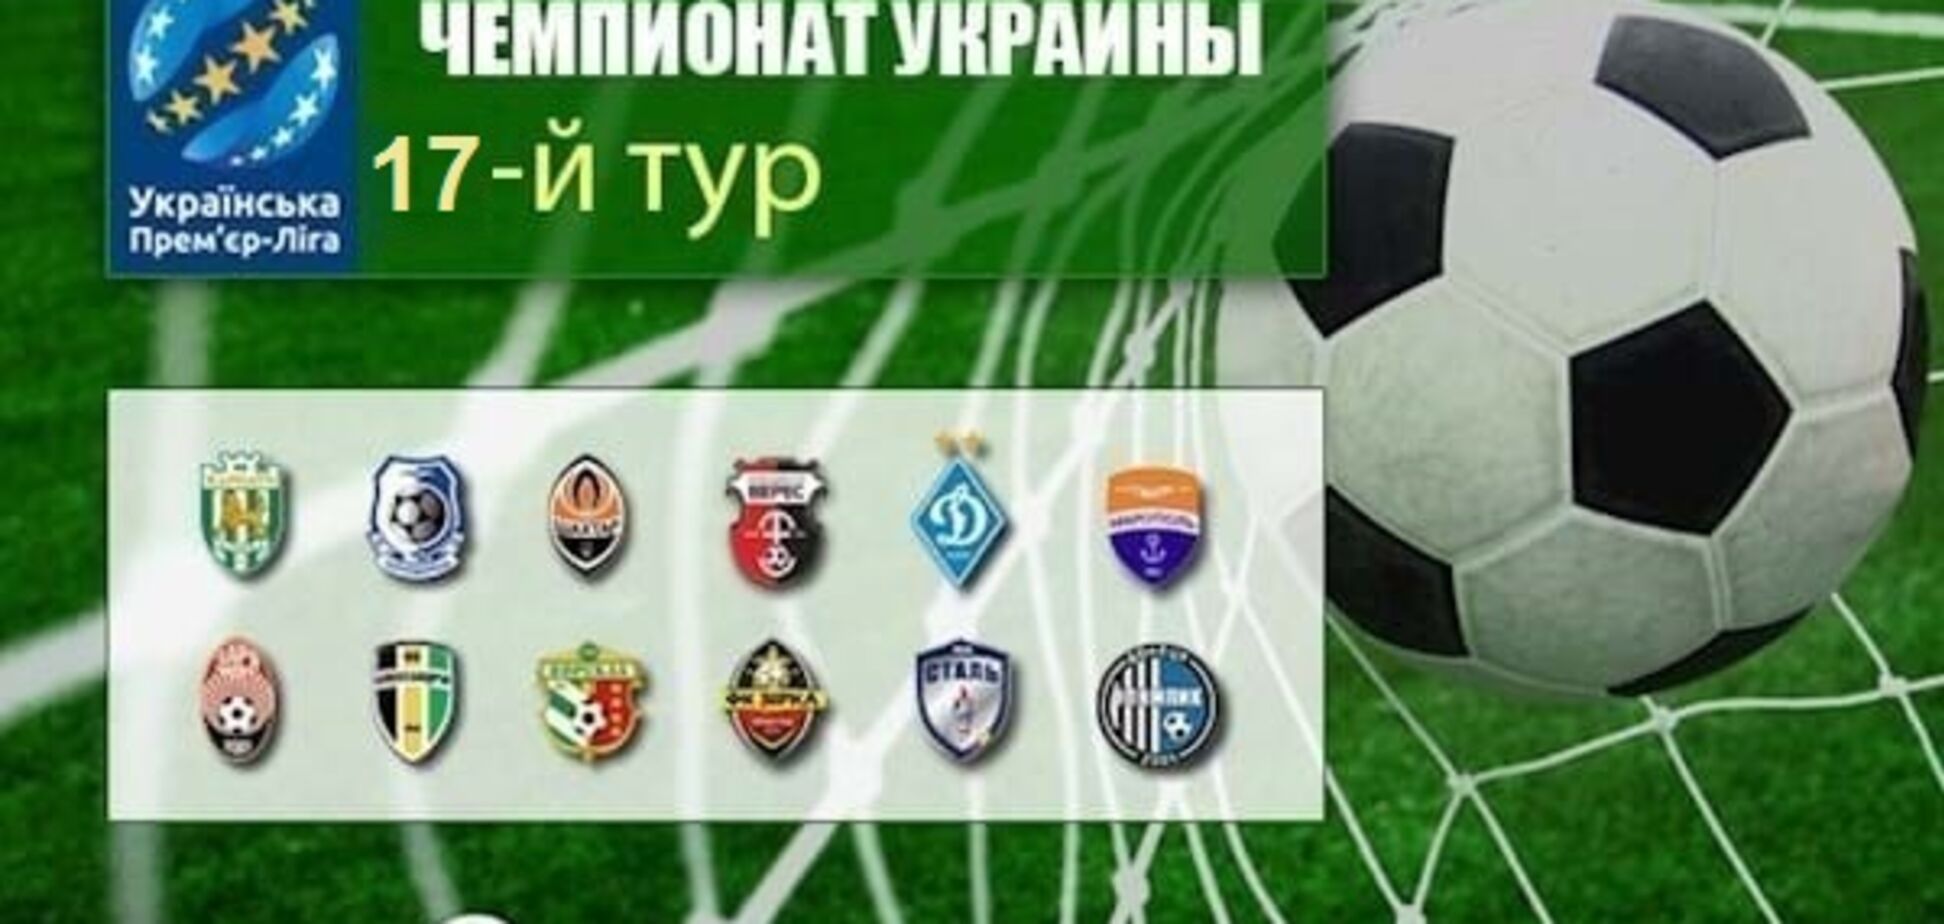 17-й тур чемпіонату України з футболу: результати, огляди, таблиця